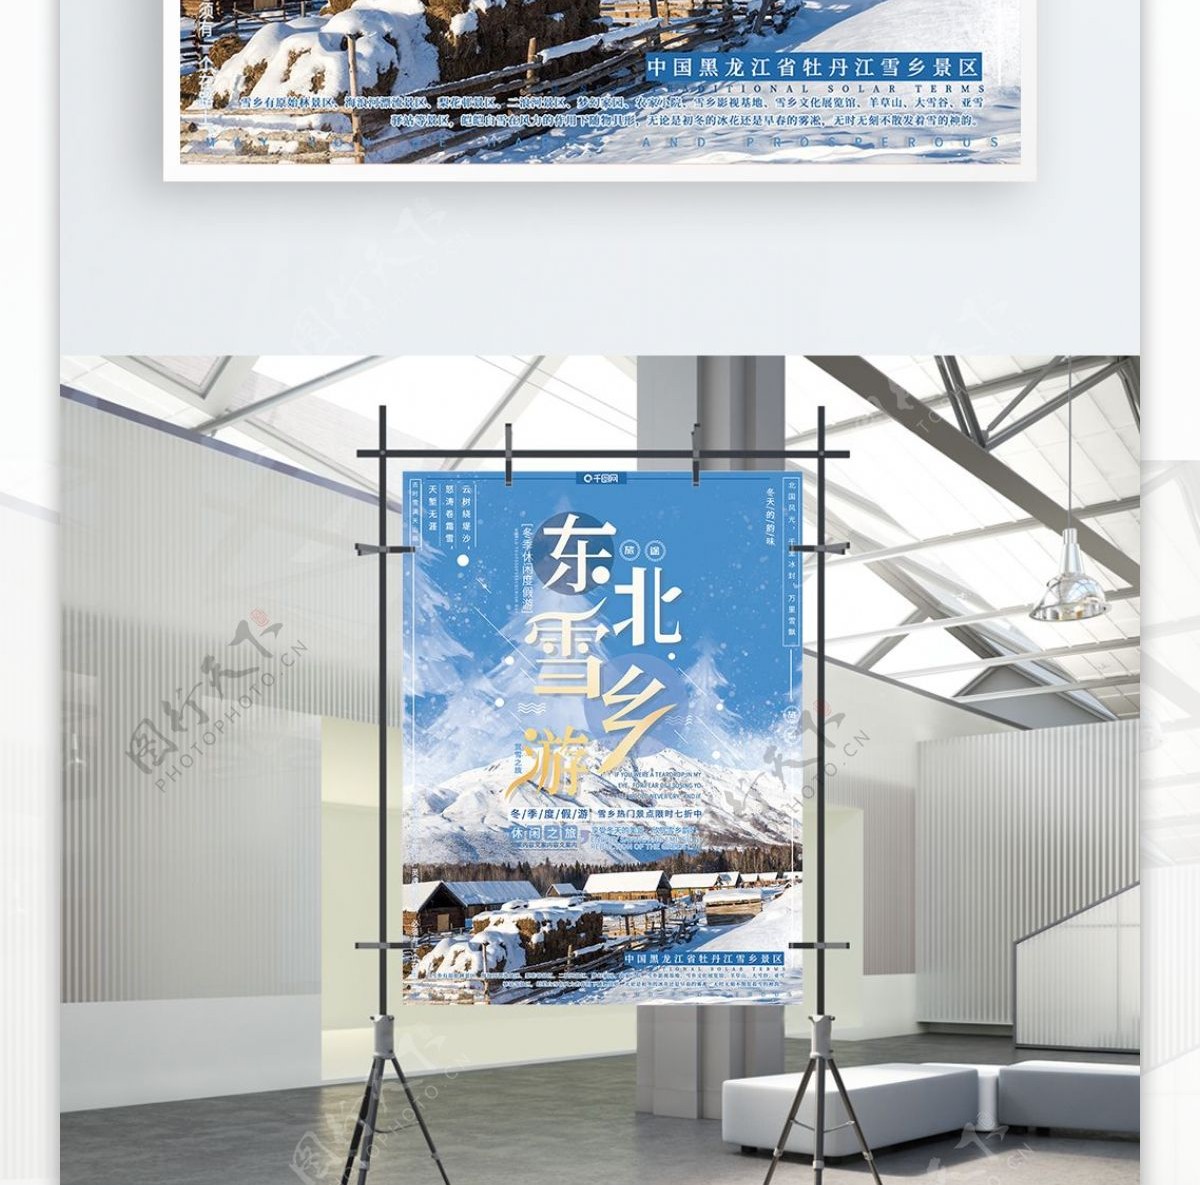 简约大气冬季旅游东北雪乡雪景旅游宣传海报